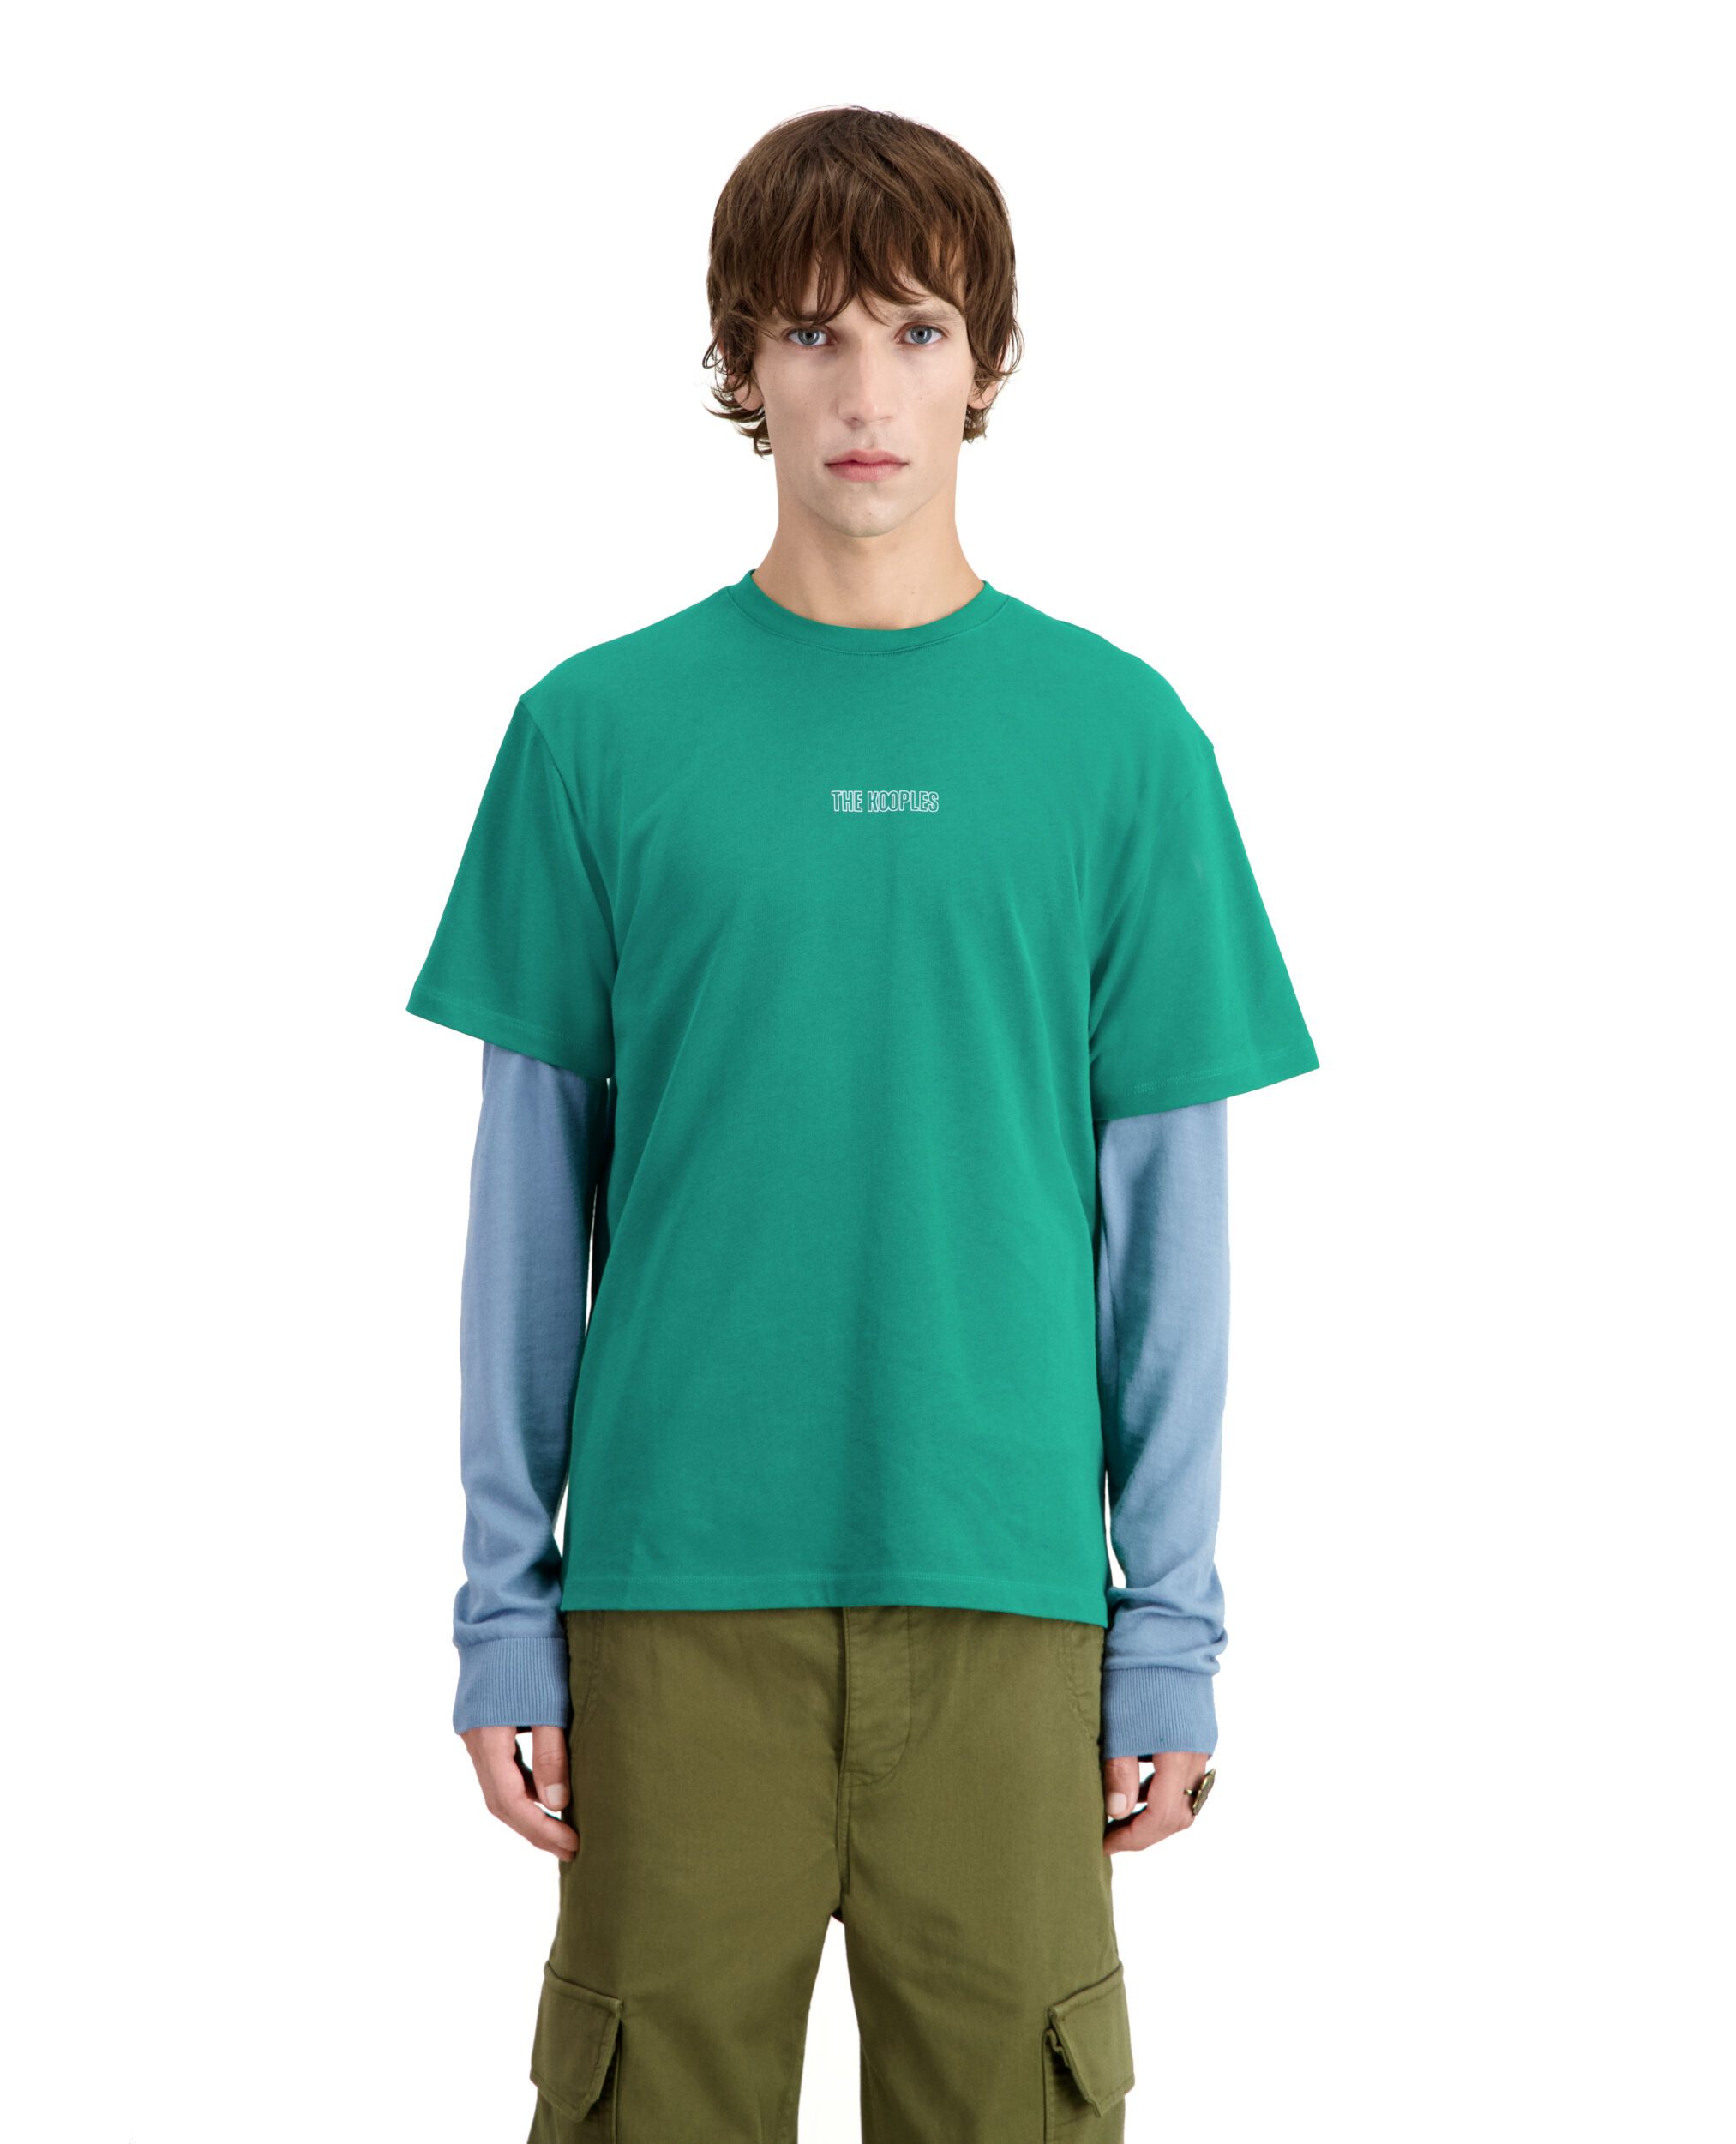 Grünes T-Shirt Herren mit Logo, FOREST, hi-res image number null